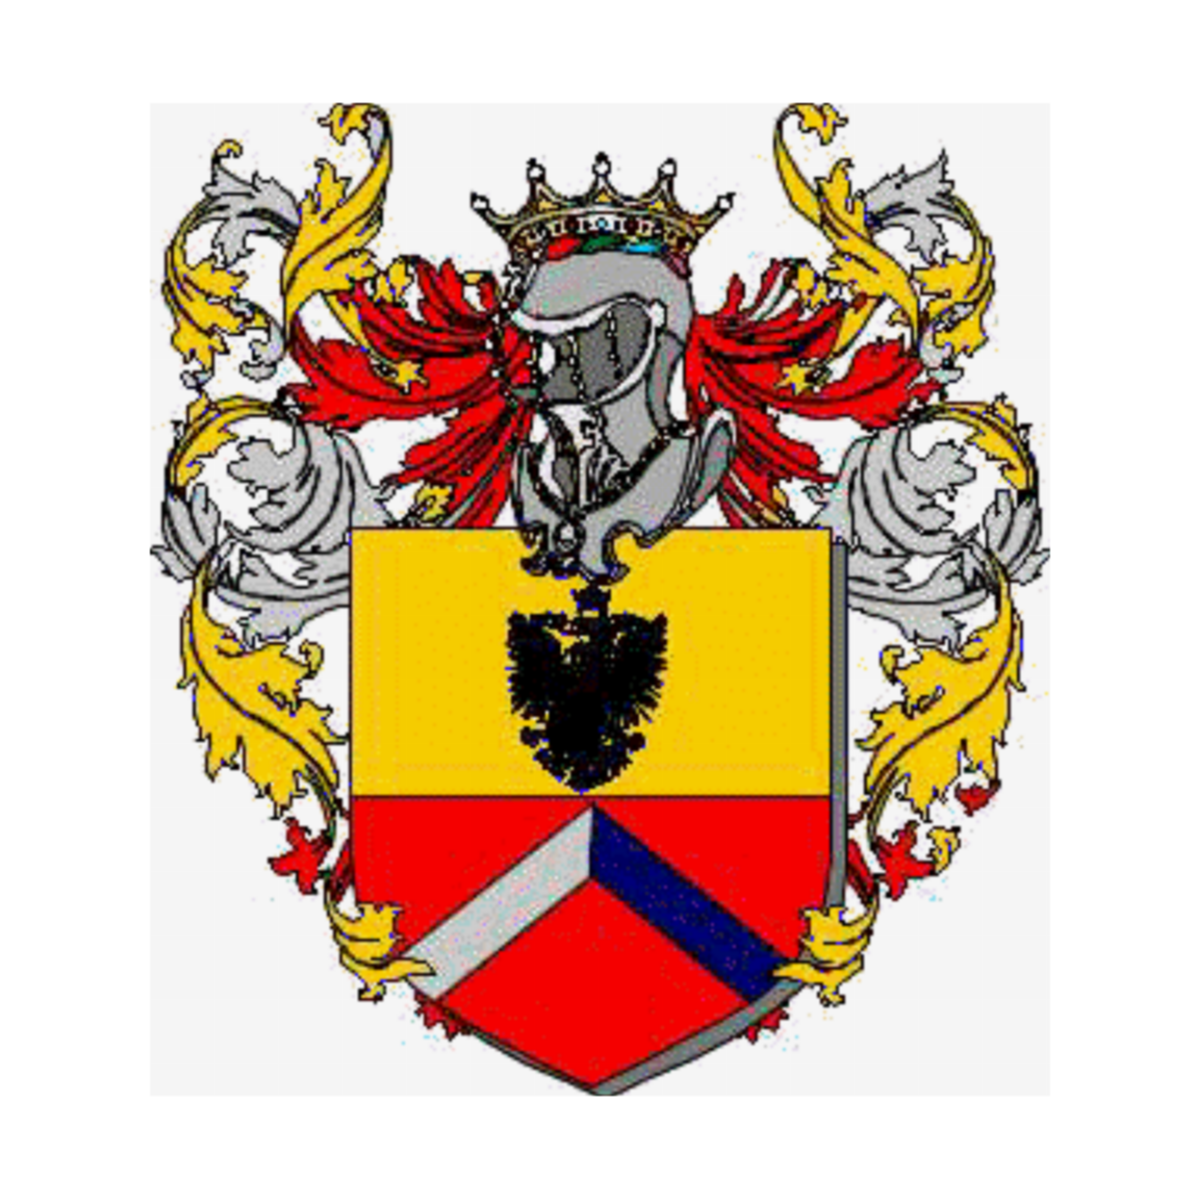 Wappen der Familie Fachinello